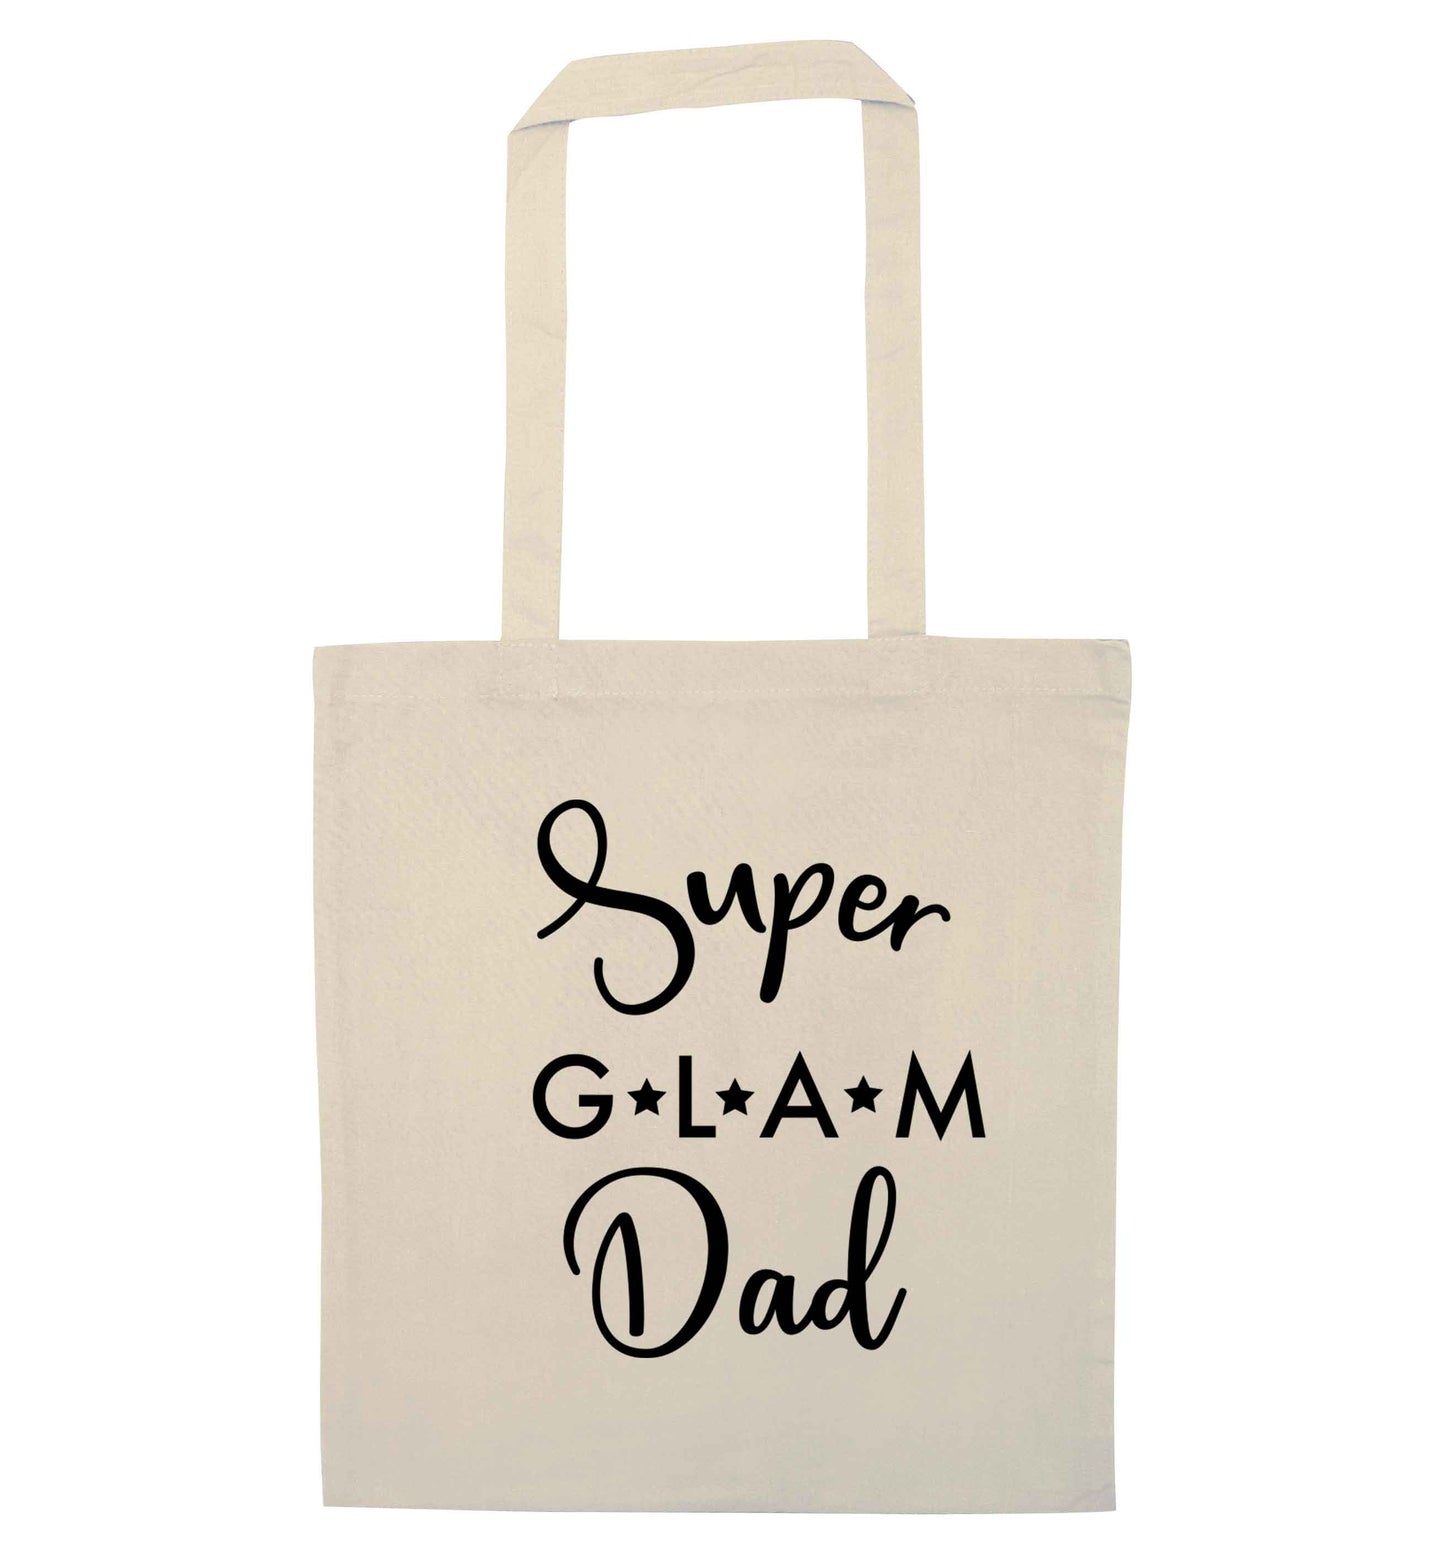 Super glam Dad natural tote bag